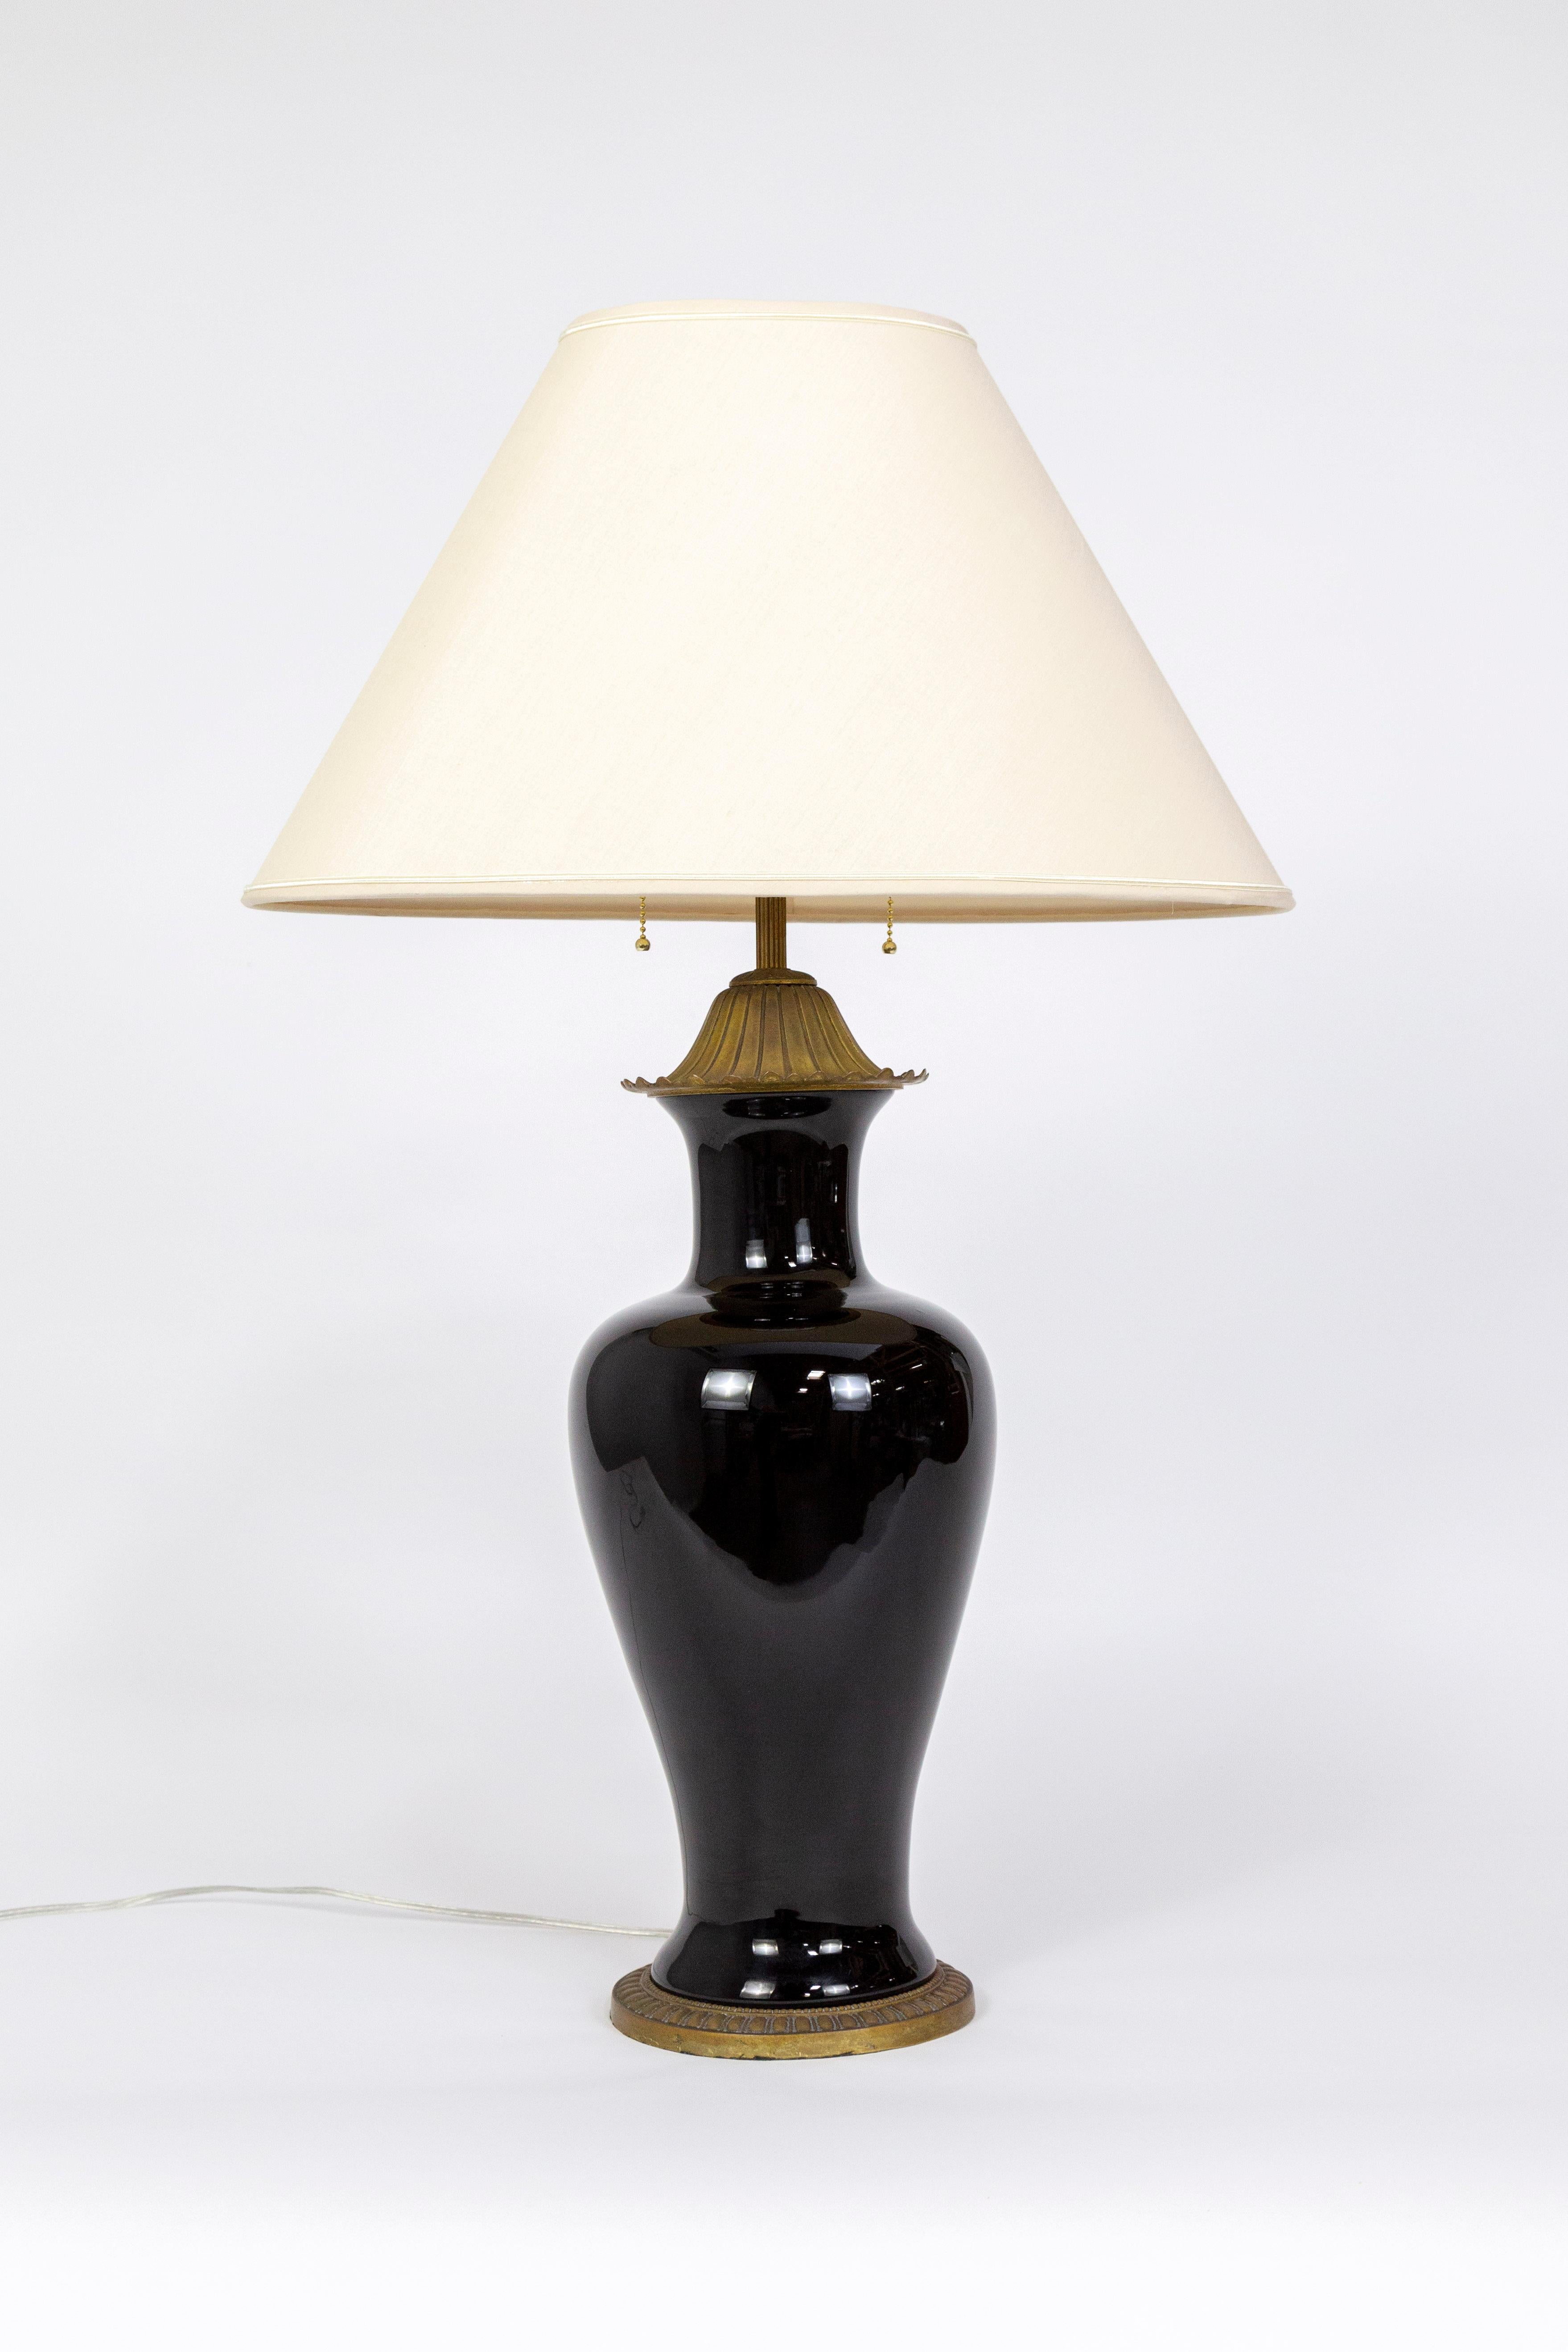 Lampe classique en porcelaine en forme de jarre amphore, émaillée en noir brillant, avec une base en laiton finement coulée et vieillie, un capuchon en forme de fleur et une tige nervurée. Elle a été fabriquée dans les années 1950 par Marbro Lamp